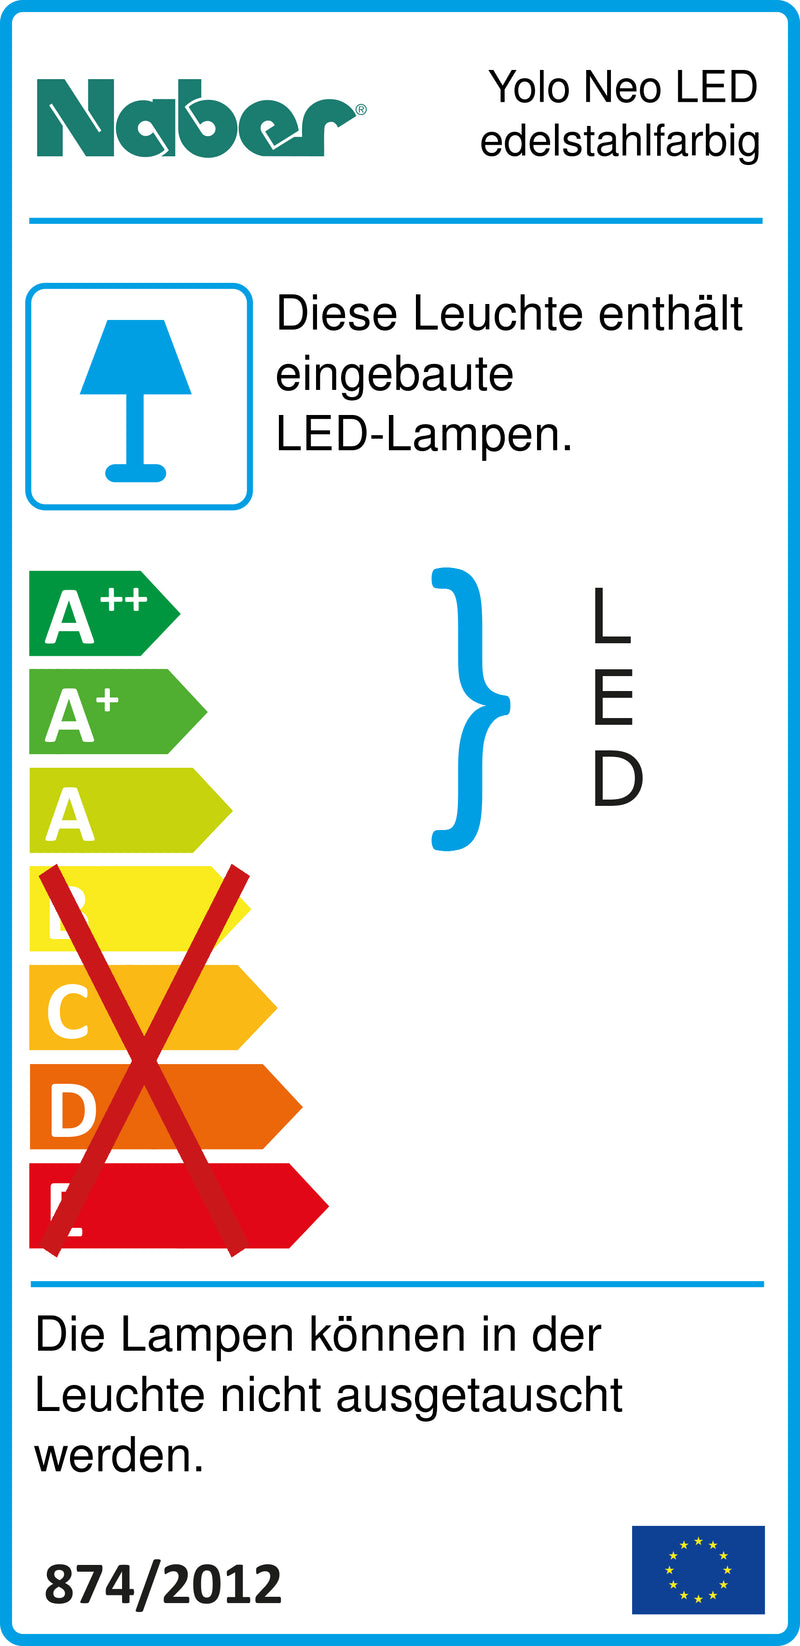 E-Label zu Zeichnung zu Yolo Neo LED edelstahlfarbig als Variante Set-2, 4000 K neutralweiß von Naber GmbH in der Kategorie Lichttechnik in Österreich auf conceptshop.at